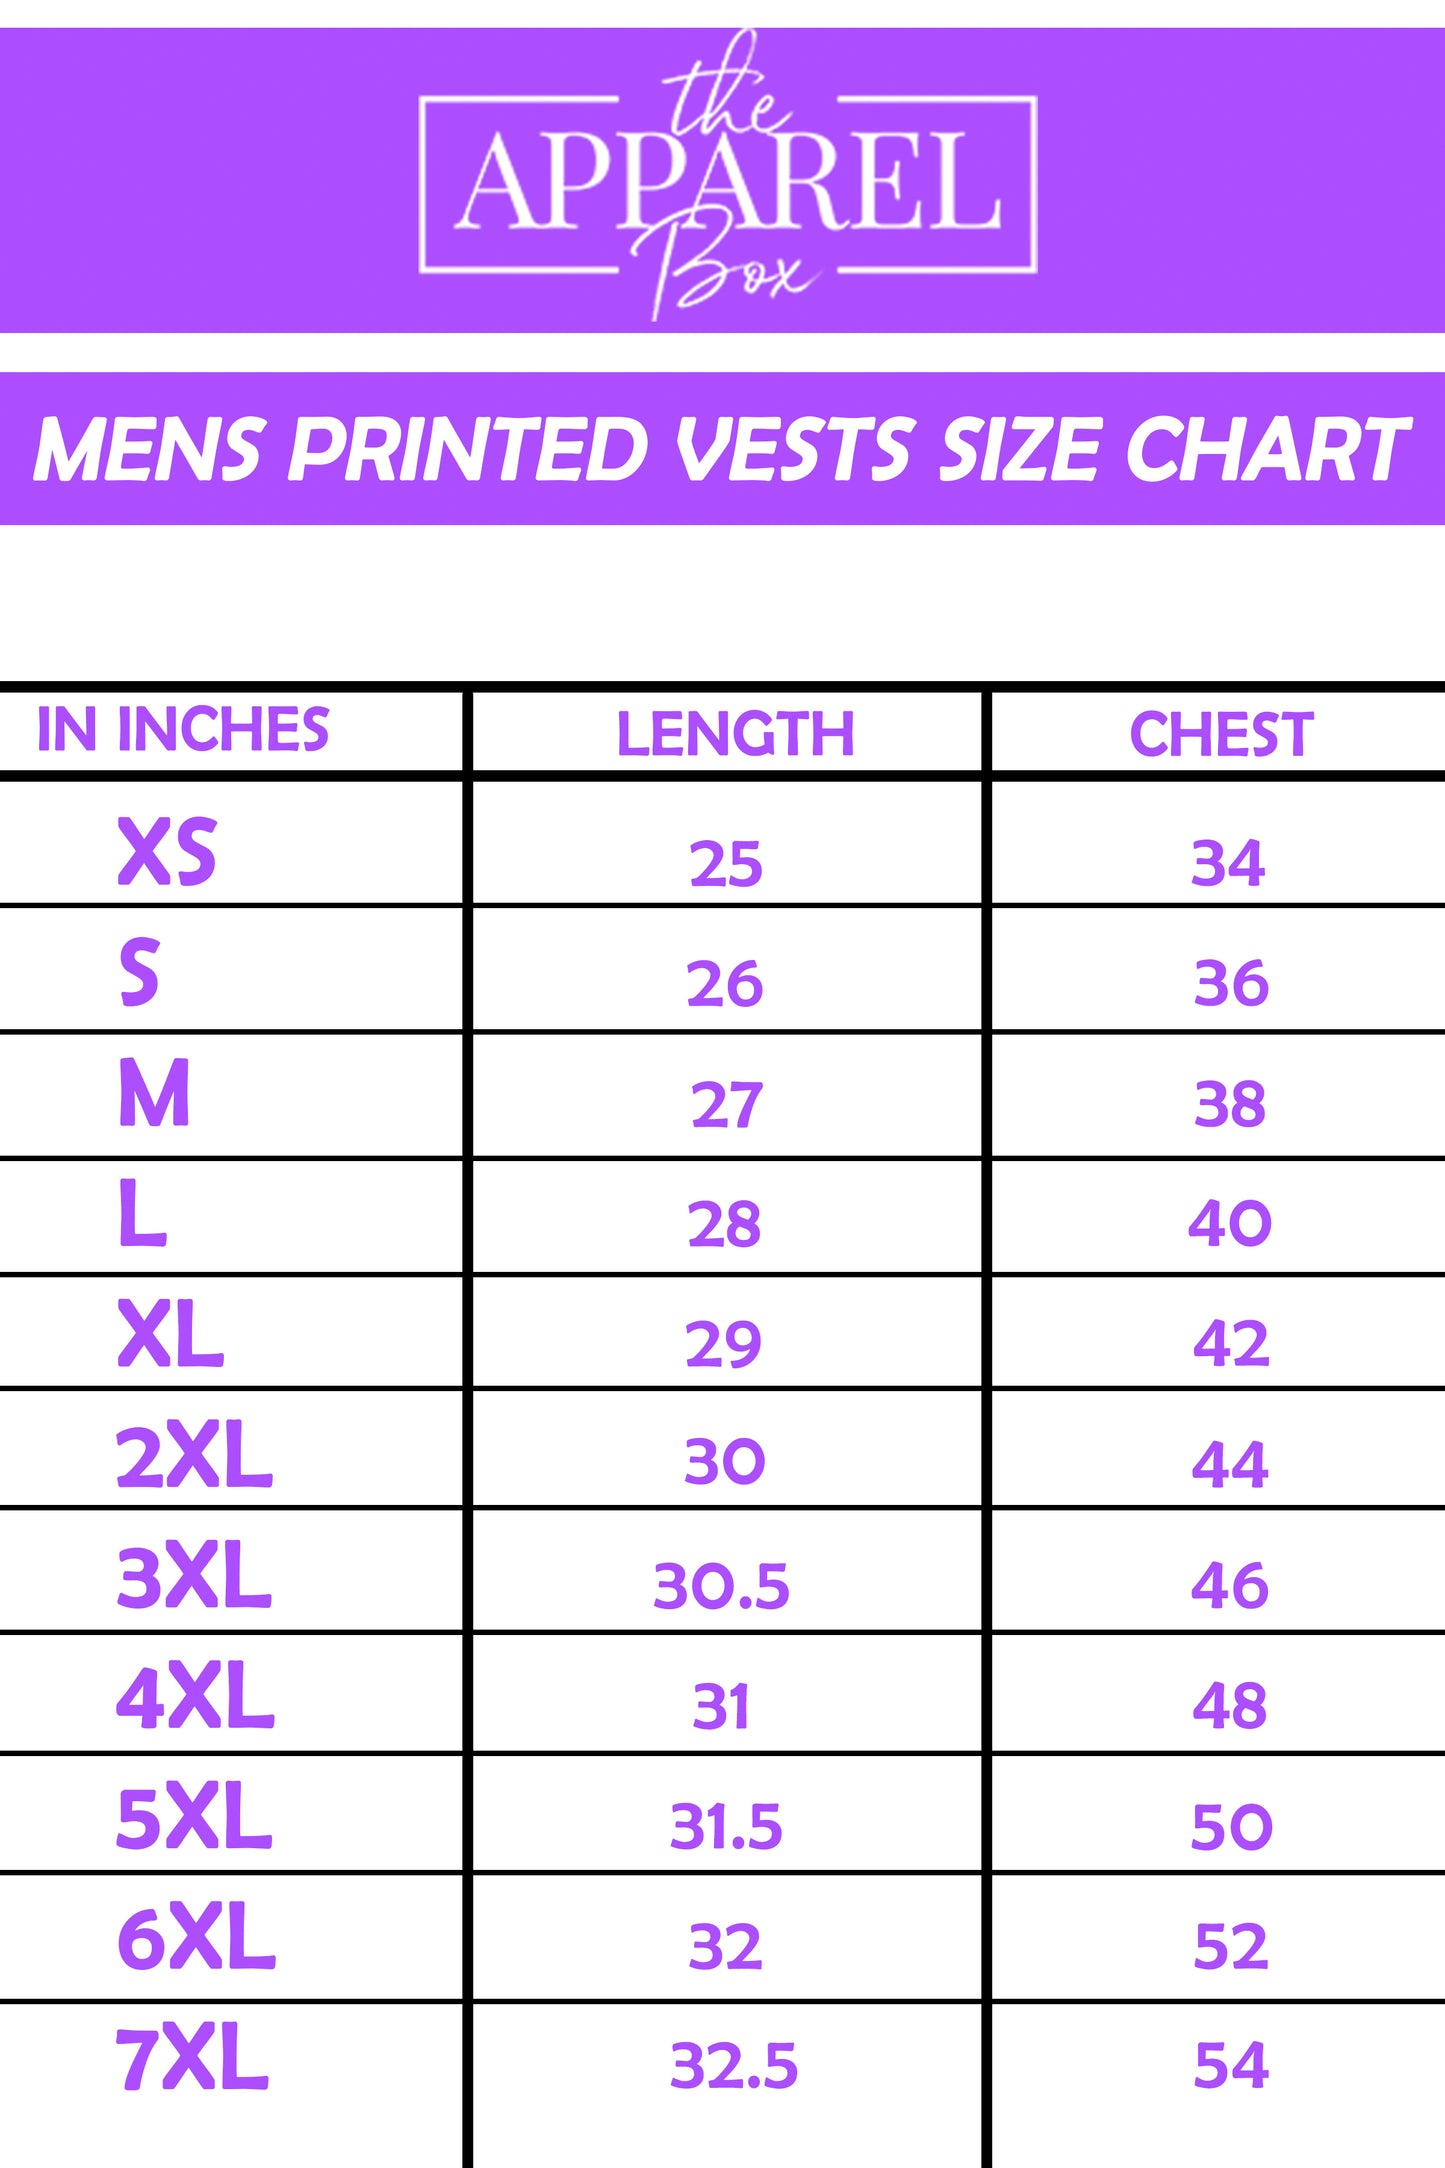 Printed Vest#29